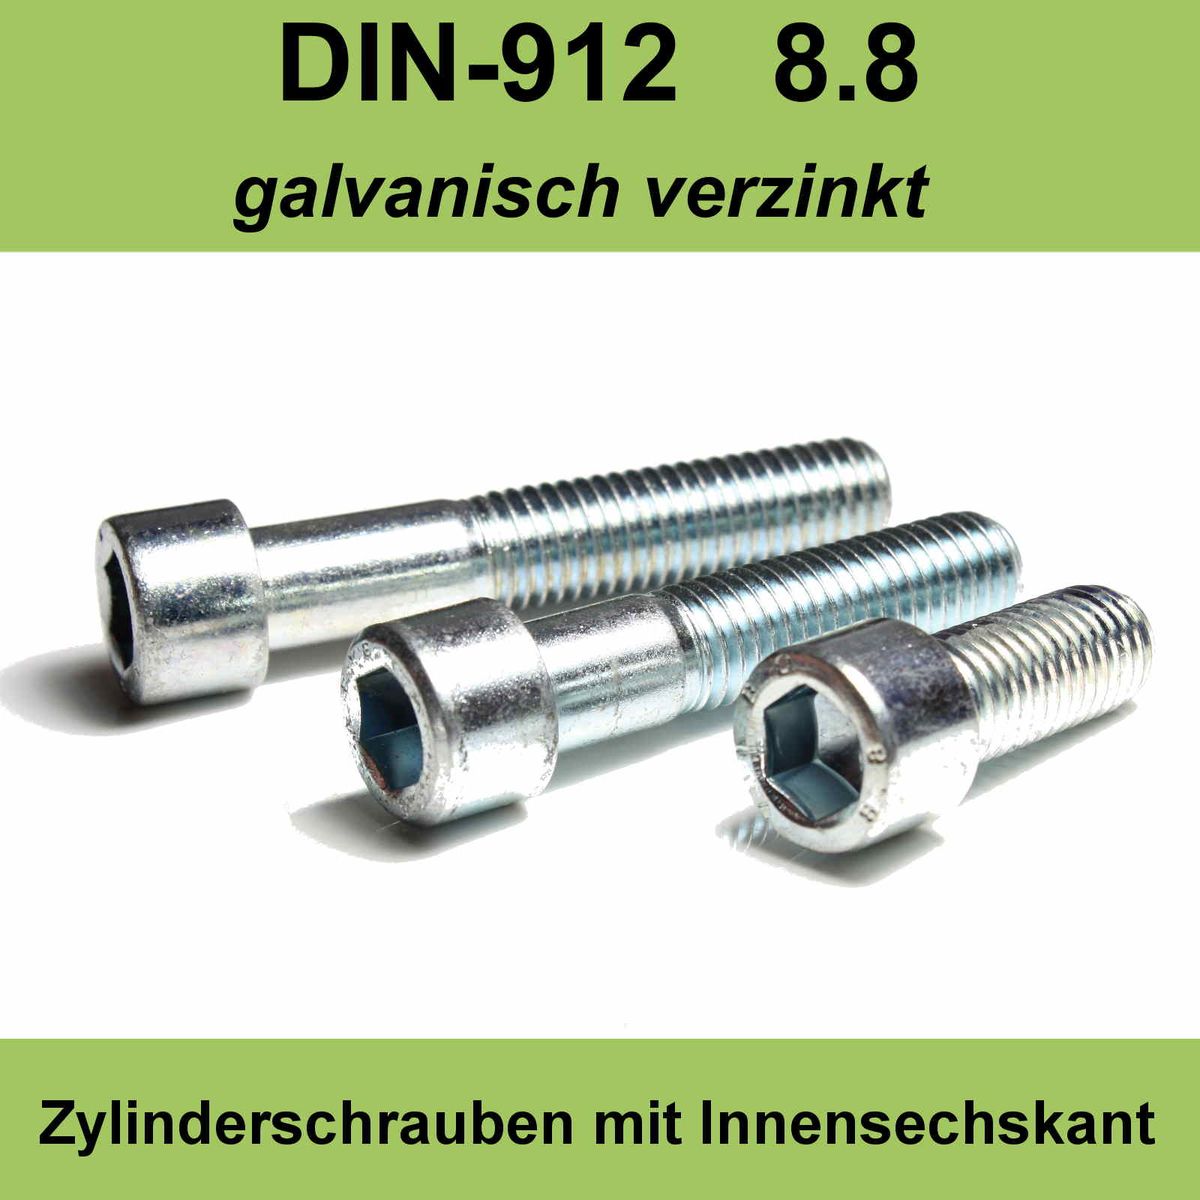 M4 DIN 912 Zylinderschraube Innensechskant Zylinder Kopf Schrauben verzinkte M4x